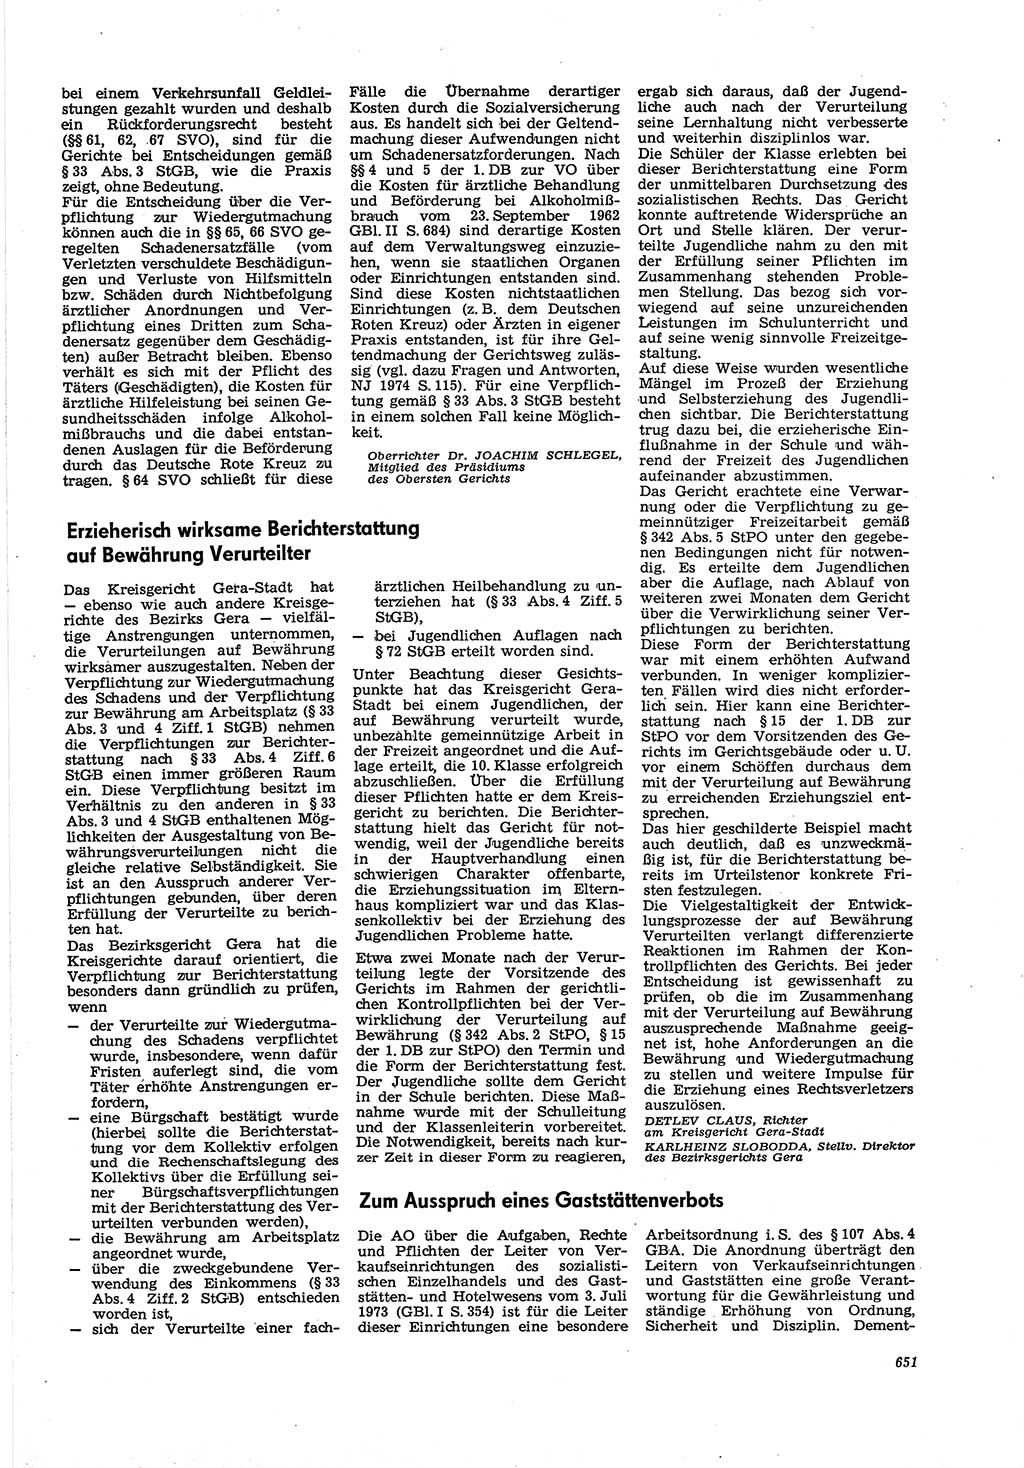 Neue Justiz (NJ), Zeitschrift für Recht und Rechtswissenschaft [Deutsche Demokratische Republik (DDR)], 30. Jahrgang 1976, Seite 651 (NJ DDR 1976, S. 651)